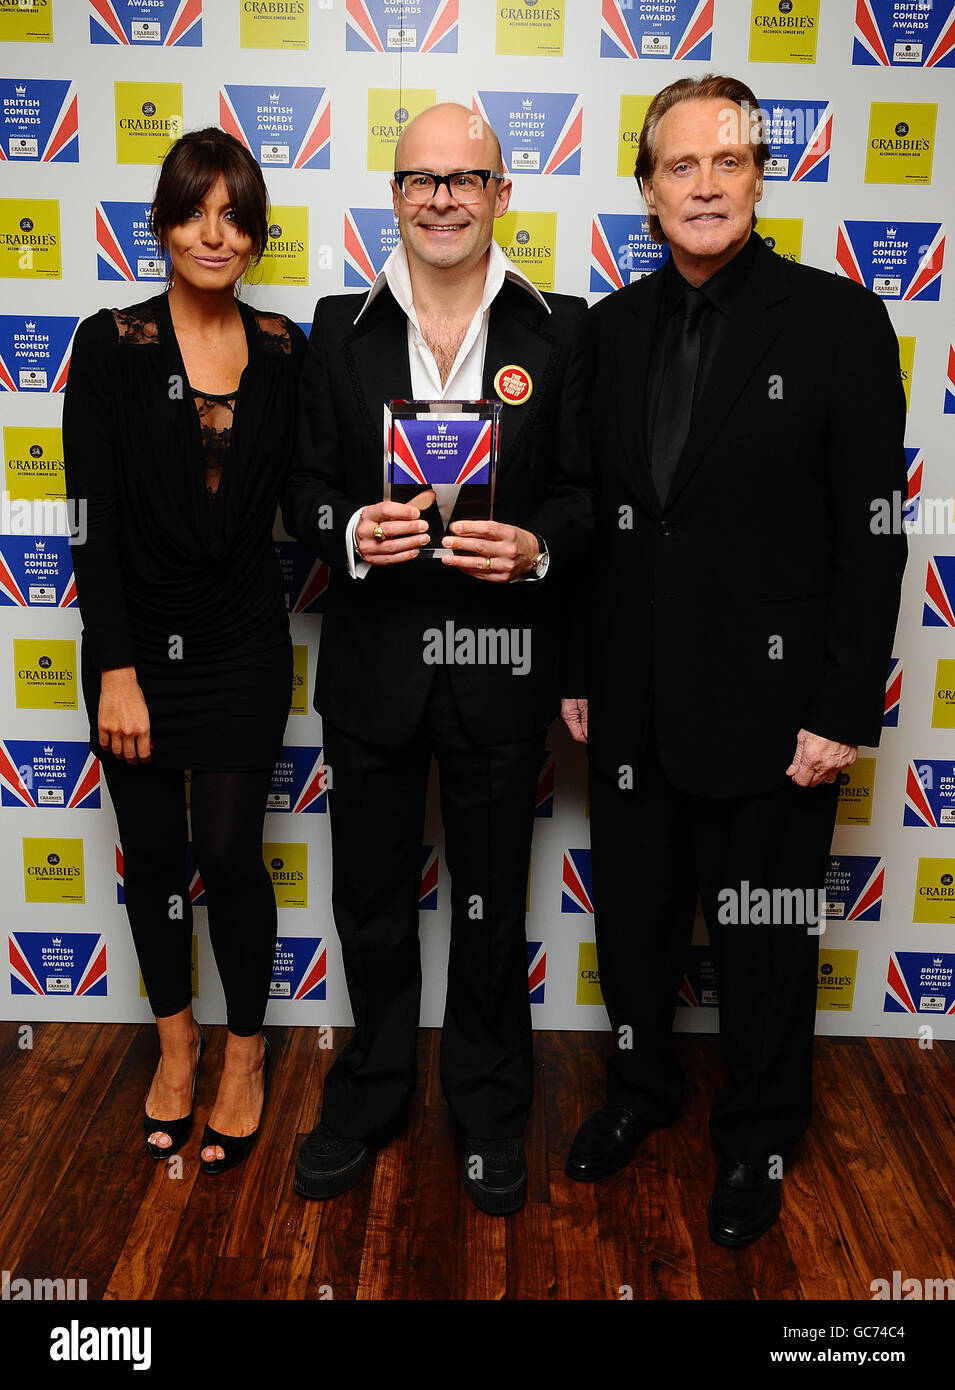 Harry Hill (centro) vince la migliore personalità commedia di intrattenimento, presentata da Claudia Winkleman e Lee Majors ai British Comedy Awards 2009 presso gli Studios televisivi di Londra. Foto Stock